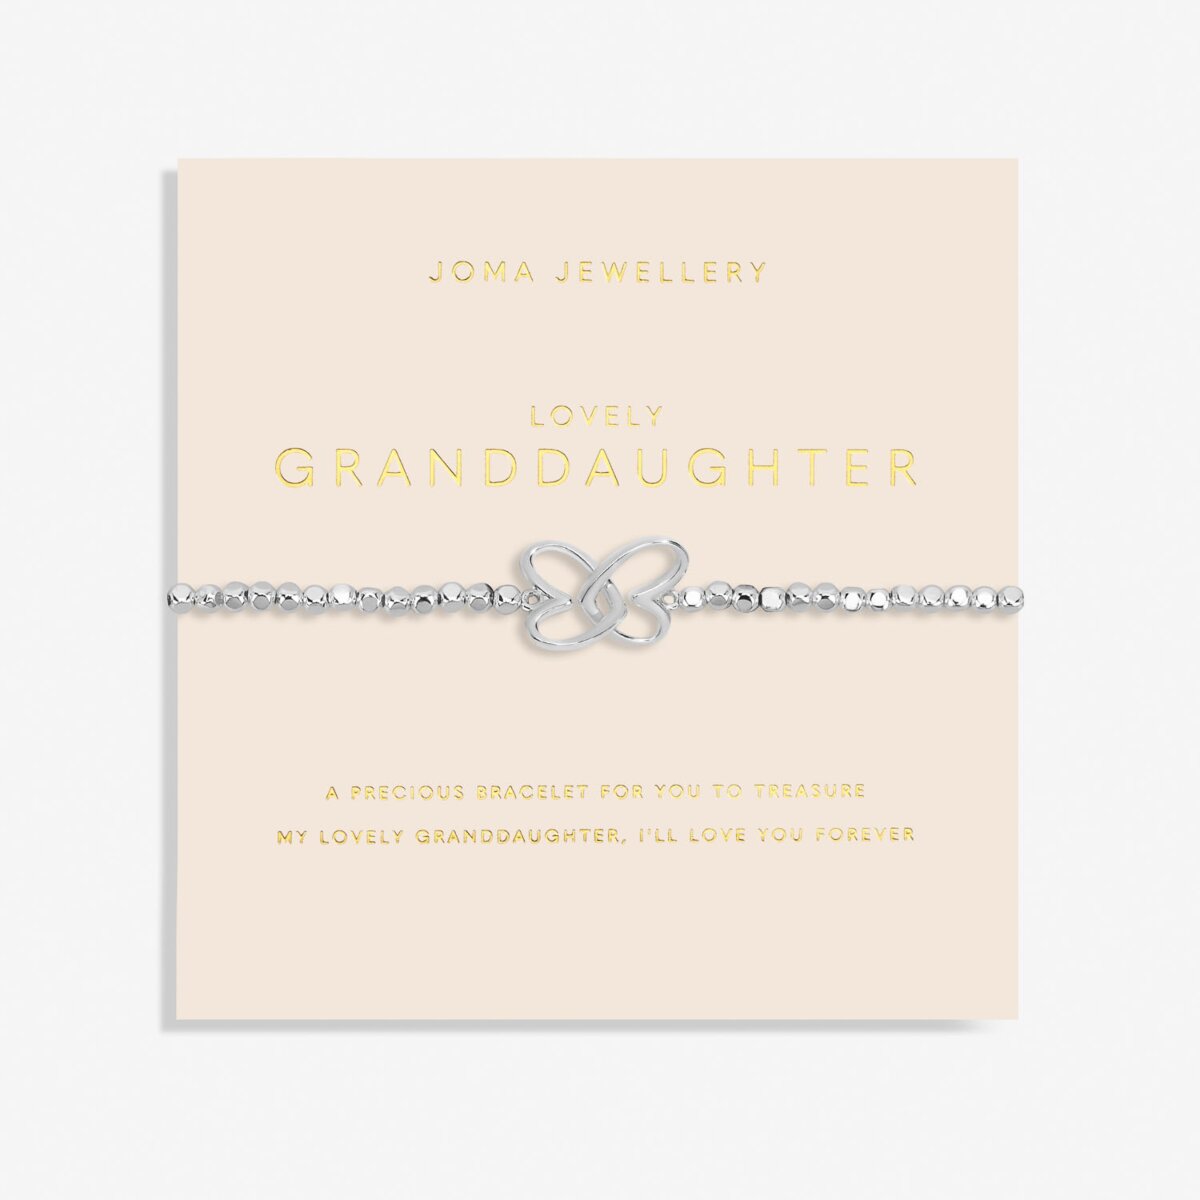 JOMA JEWELLERY | FOREVER YOURS | LOVELY GRANDDAUGHTER BRACELET